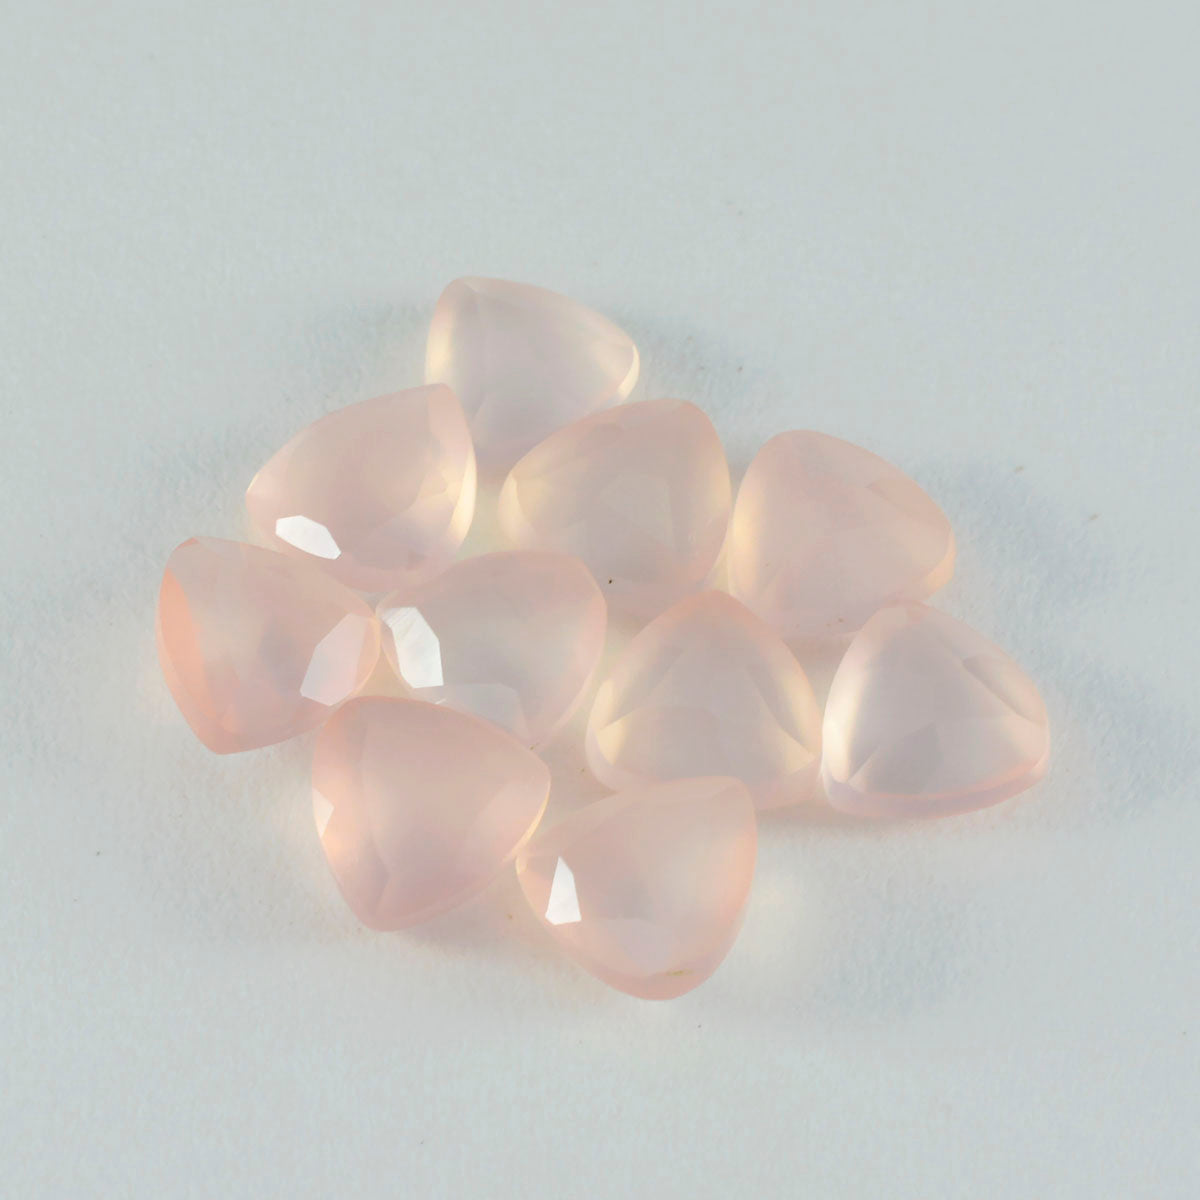 riyogems 1 шт. розовый кварц ограненный 15x15 мм форма триллиона привлекательное качество россыпь драгоценных камней